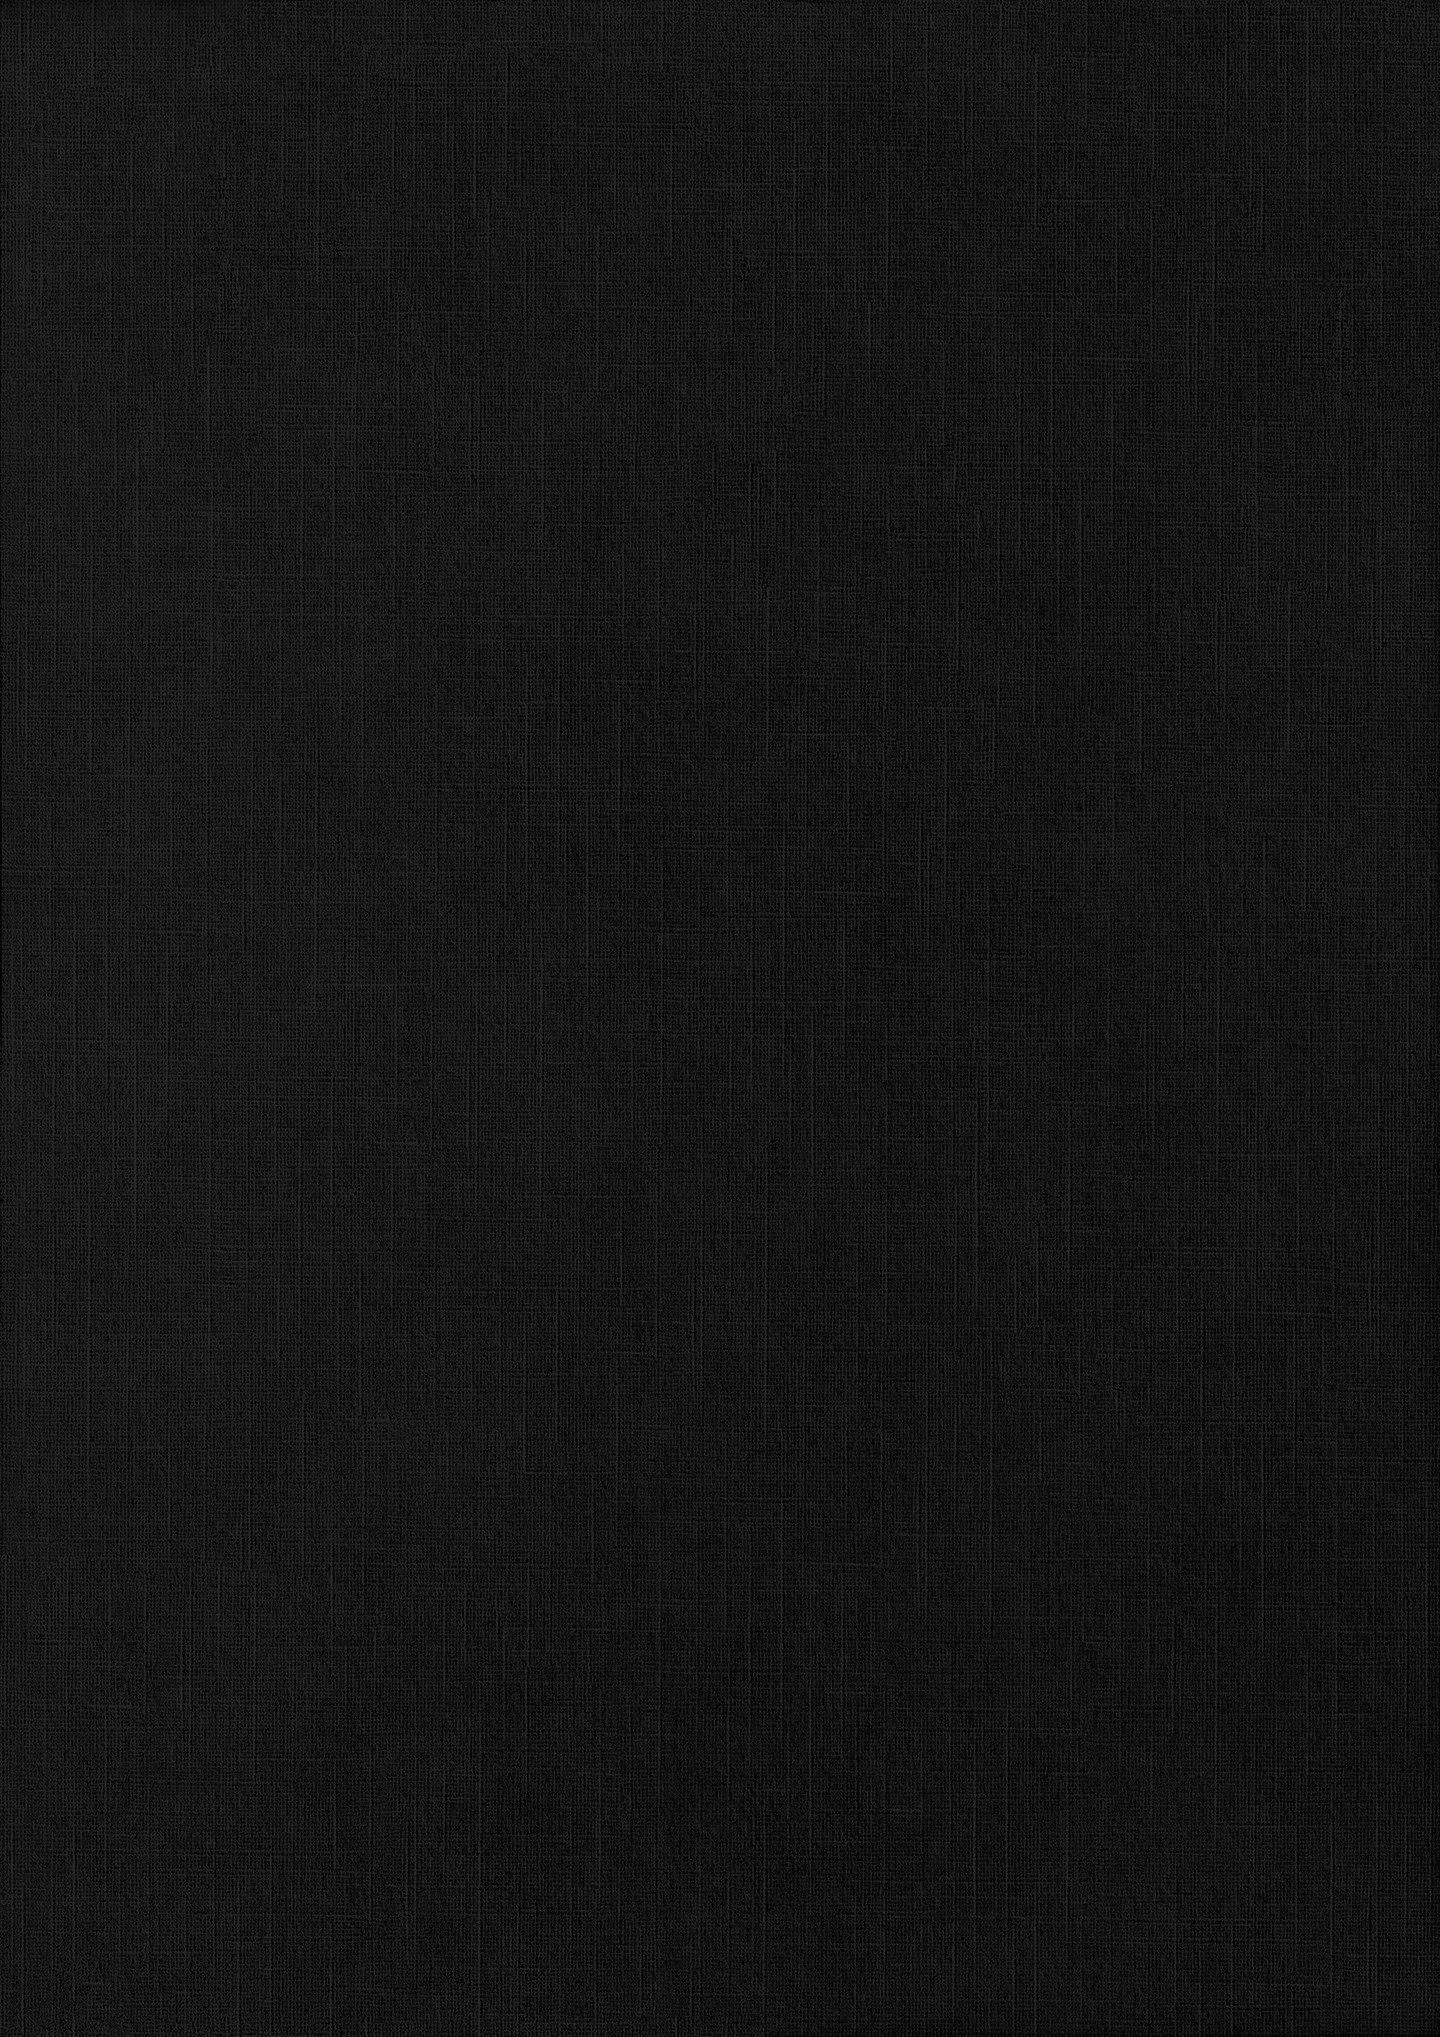 ArtStation - 26 Black Paper Texture Backgrounds | Artworks